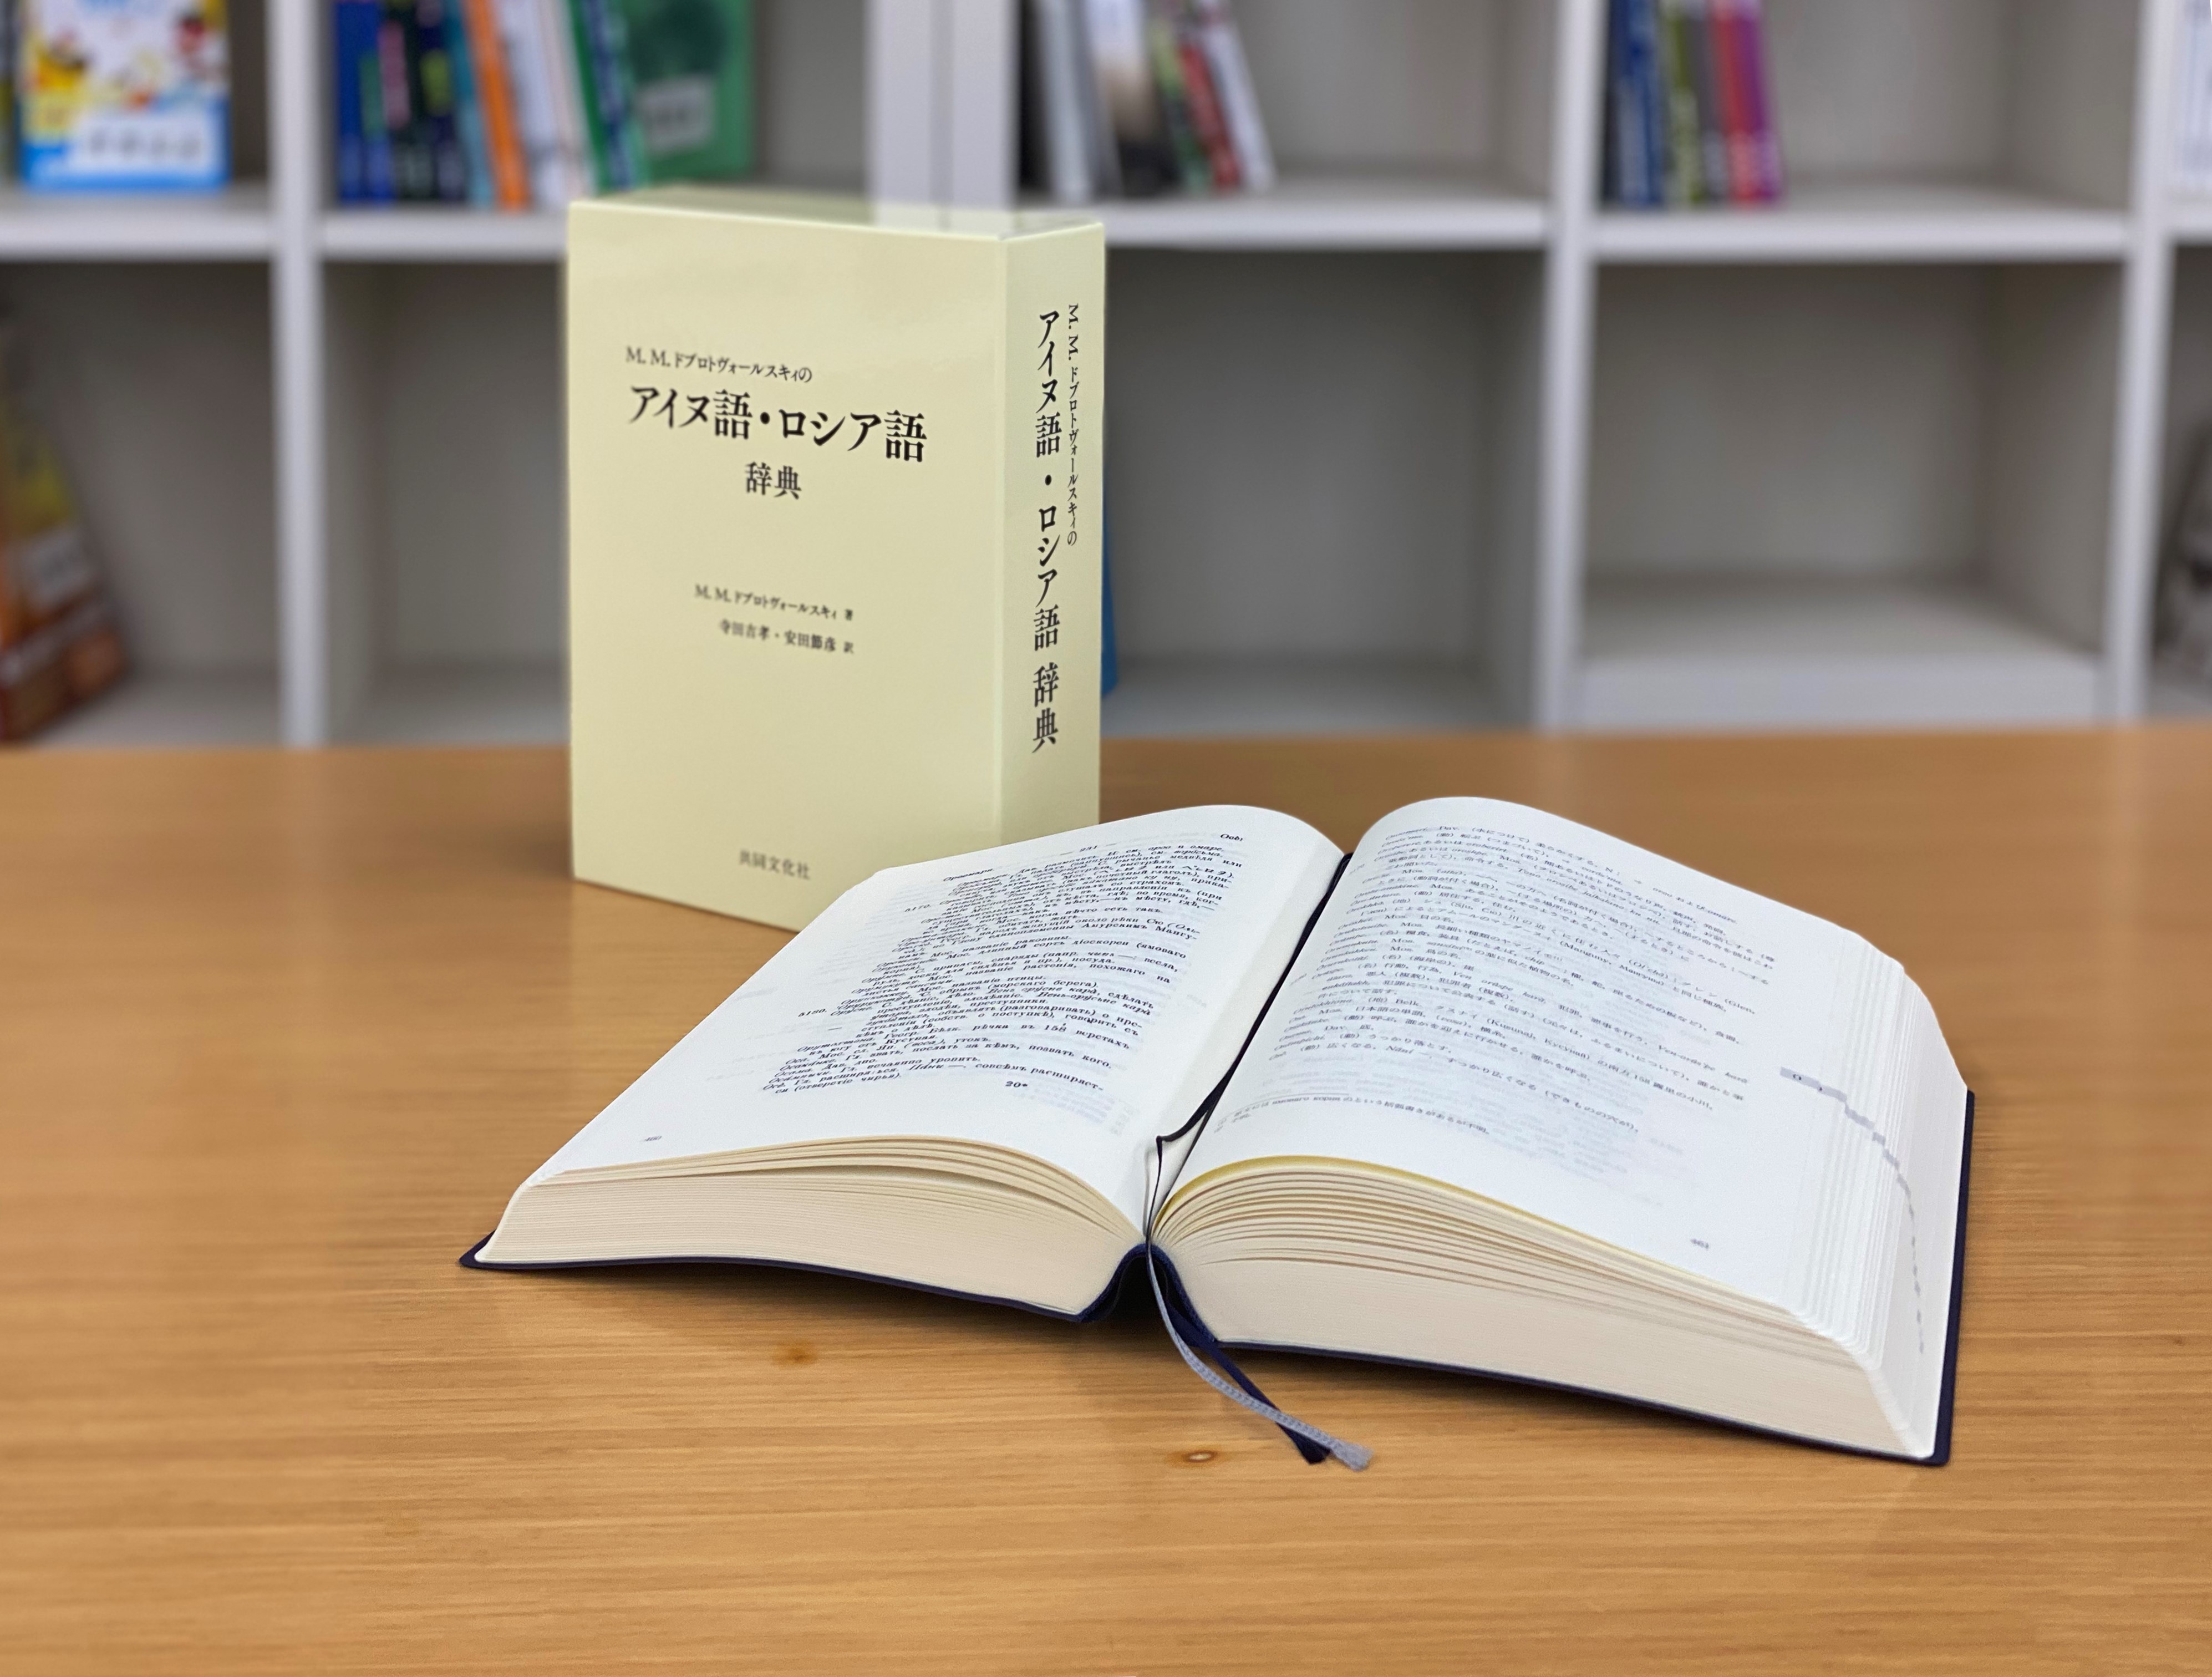 『 M.M.ドブロトヴォールスキィのアイヌ語・ロシア語辞典』第59回日本翻訳出版文化賞を受賞しました